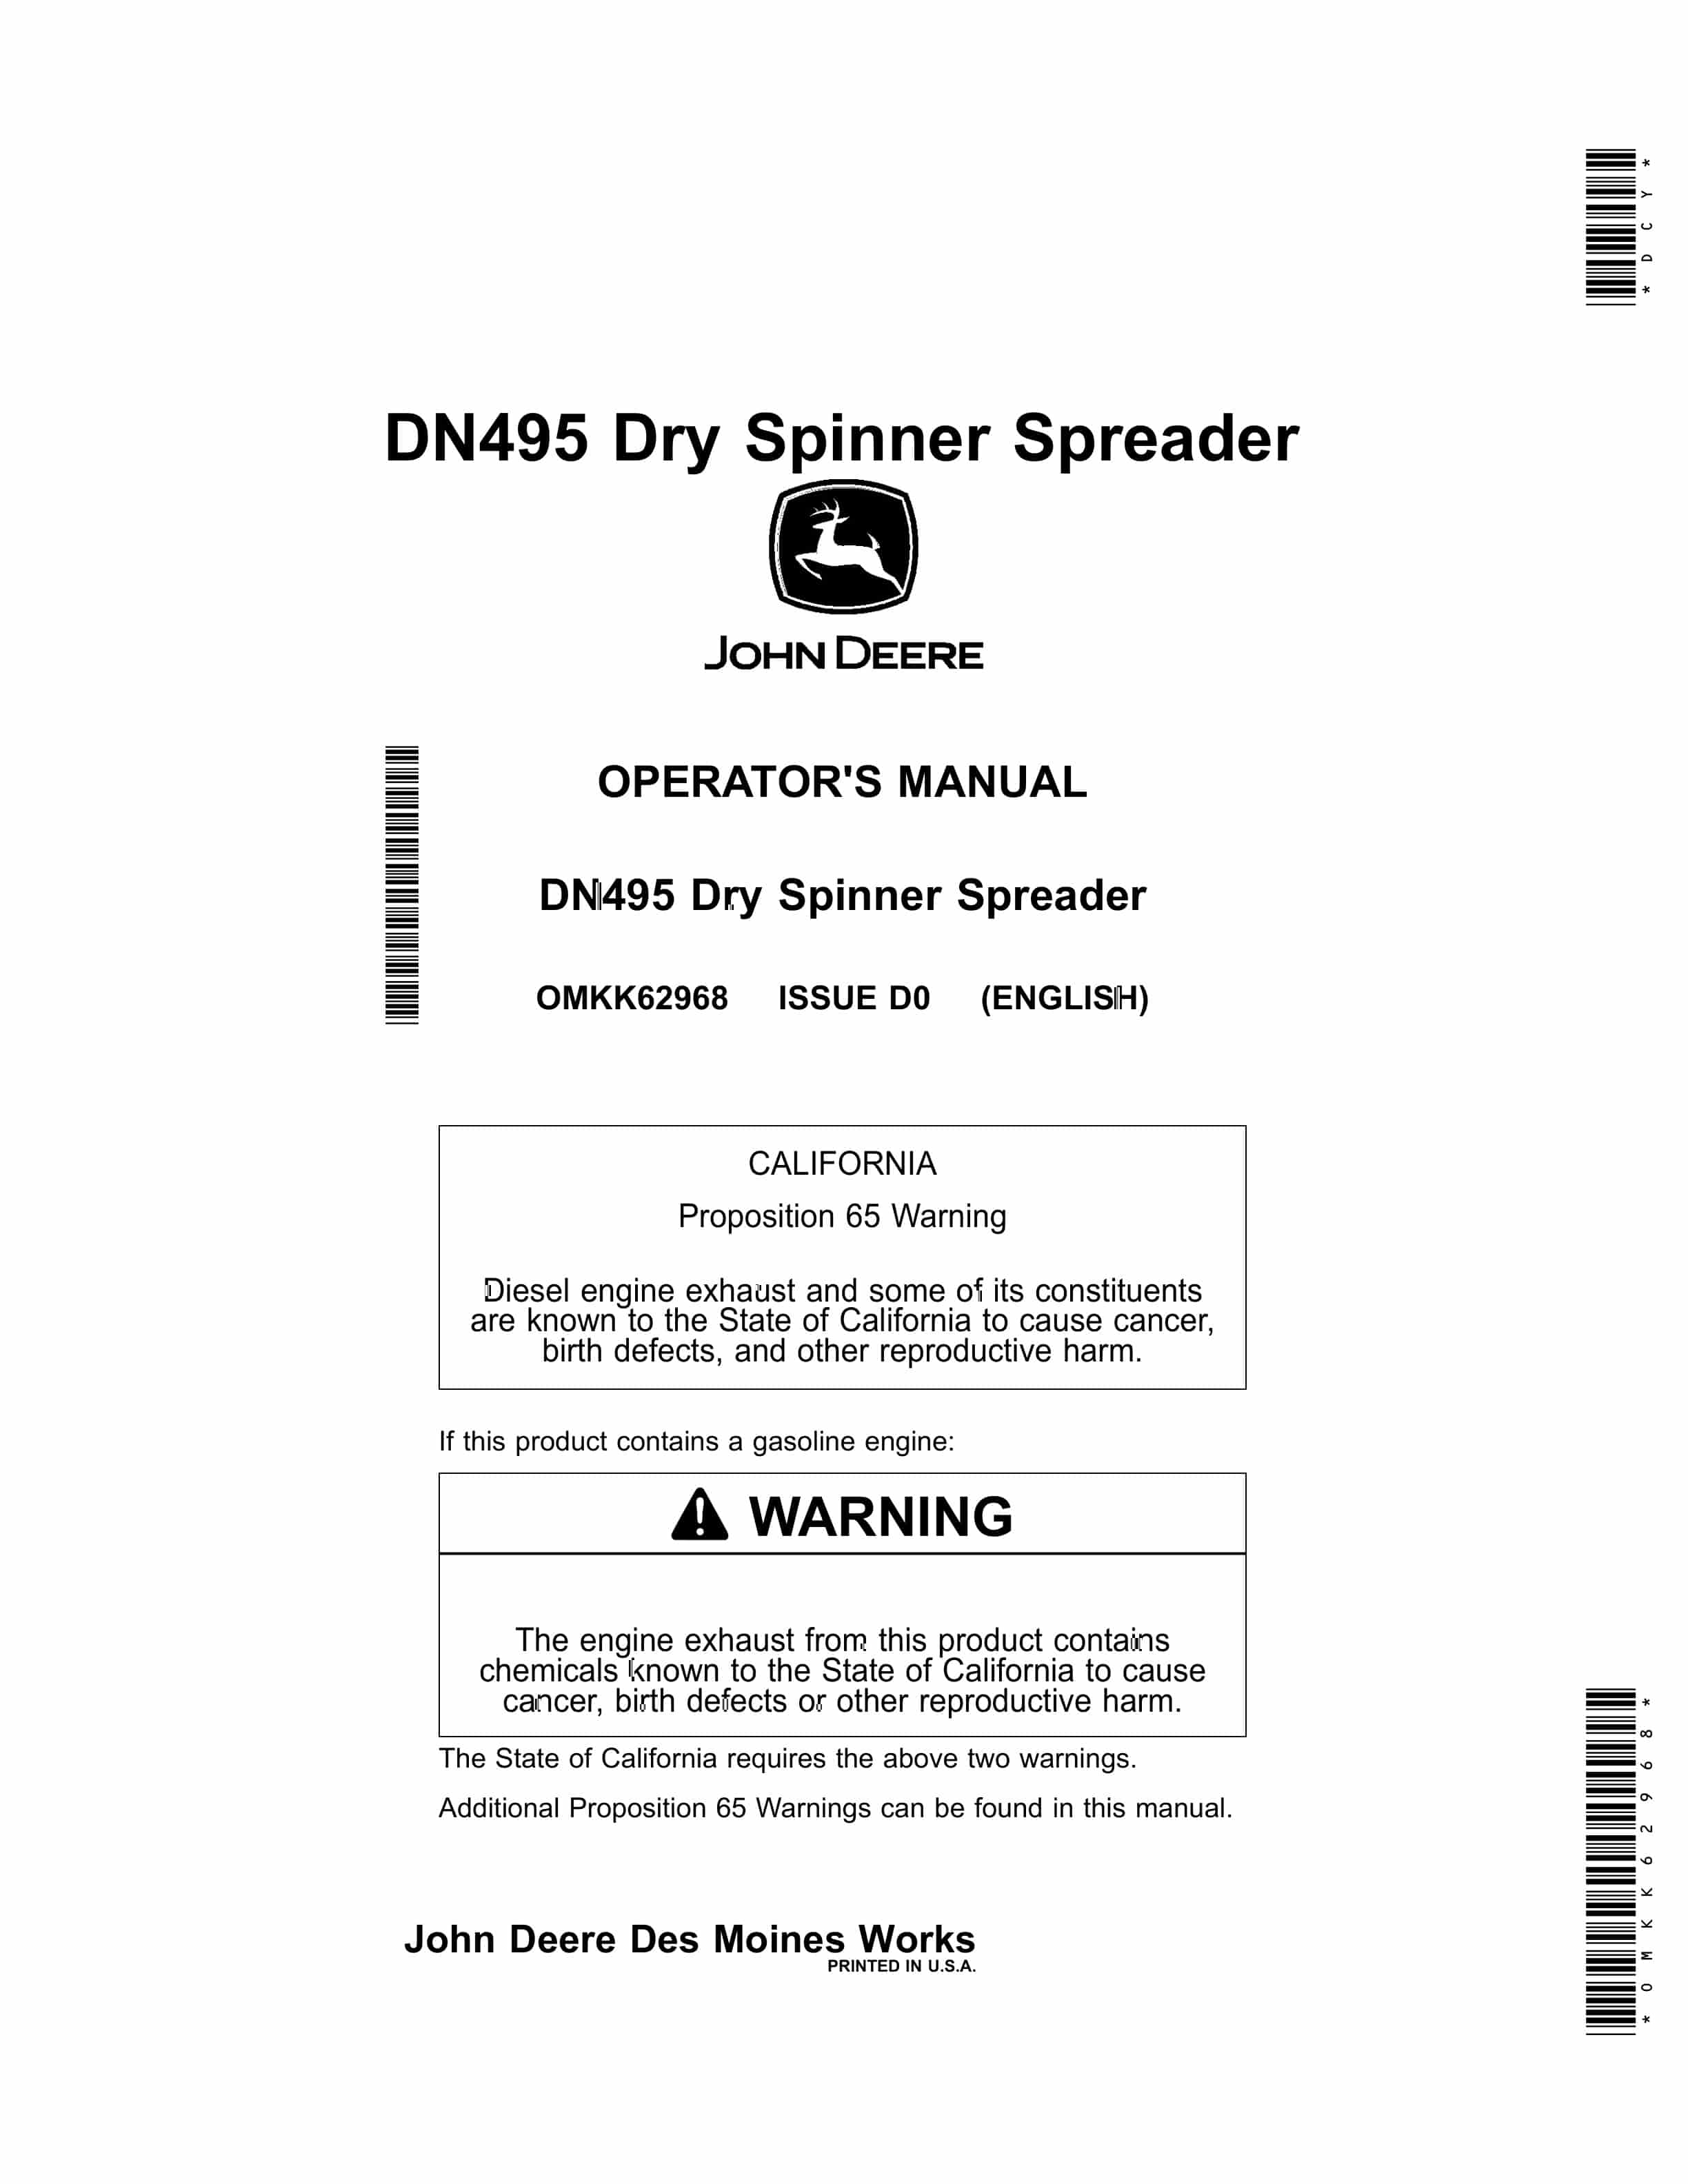 John Deere DN495 Dry Spinner Spreader Operator Manual OMKK62968 1